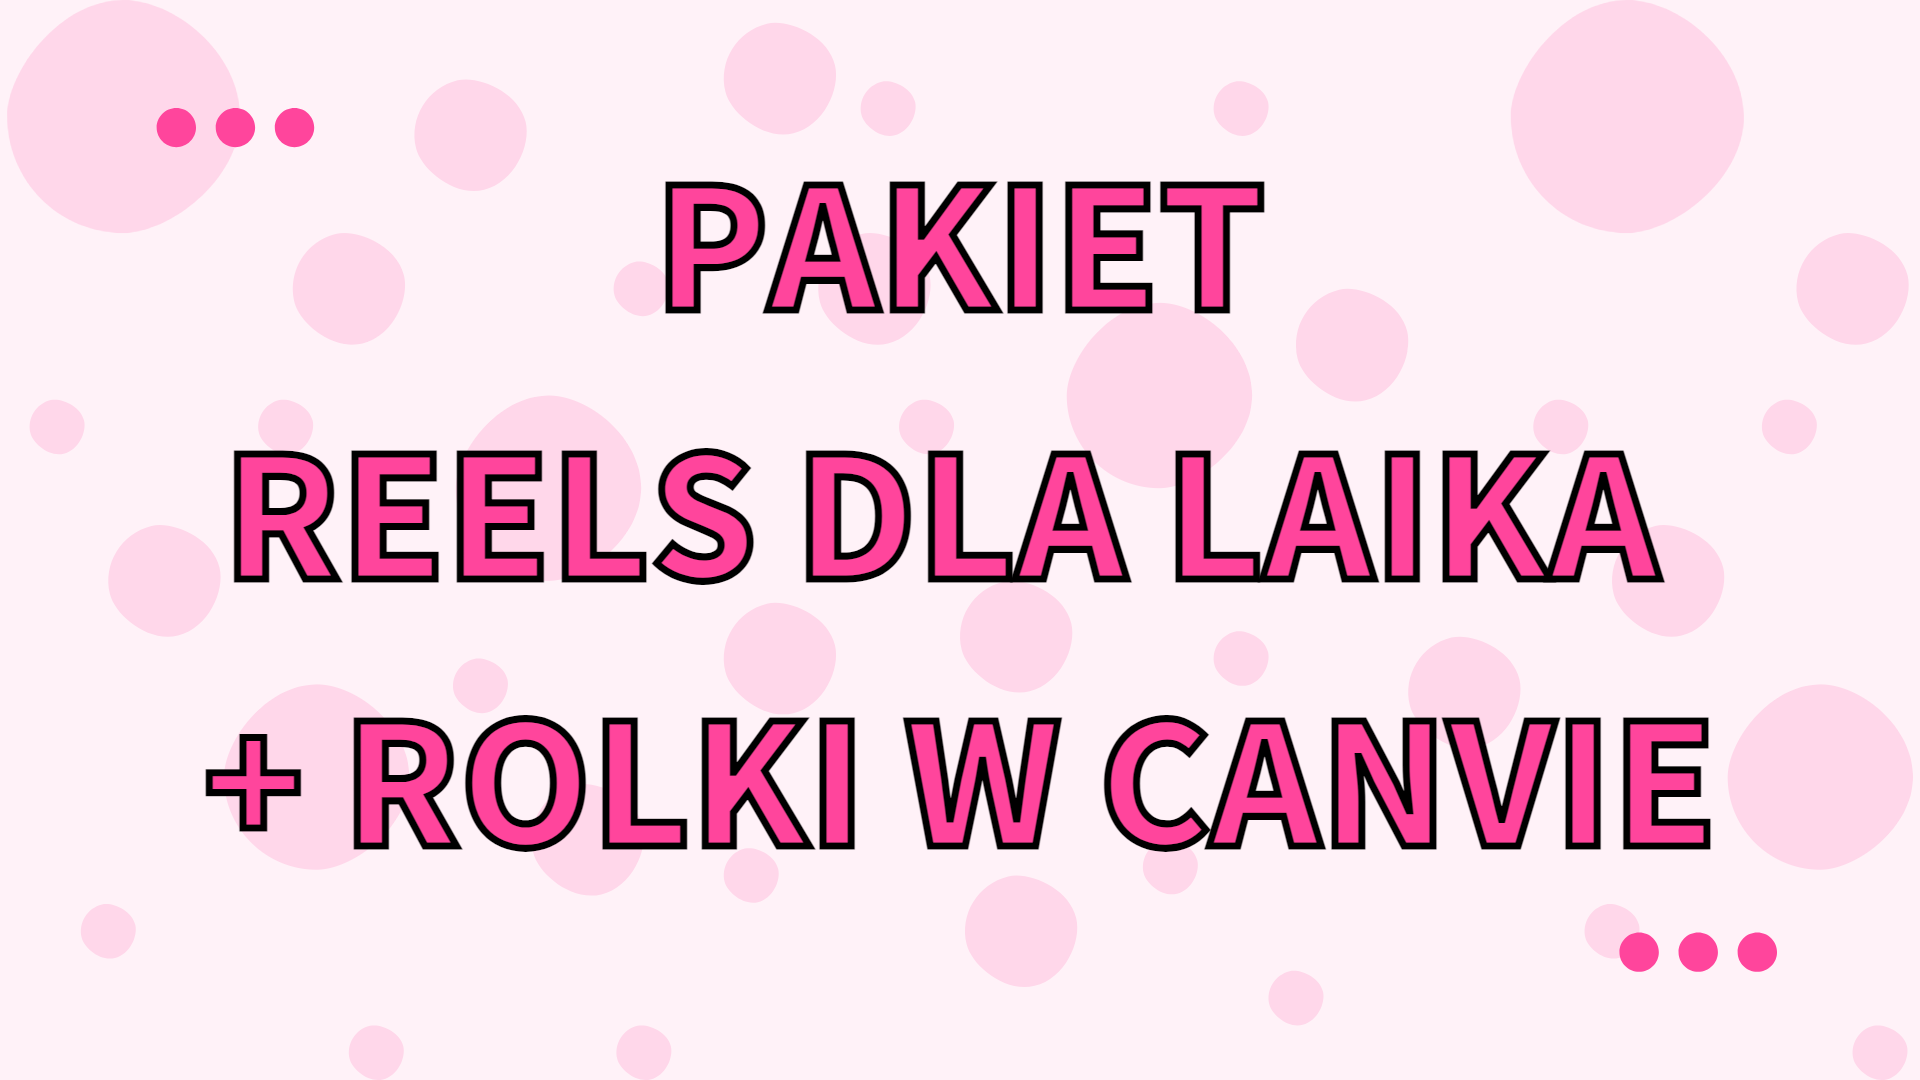 PAKIET REELS DLA LAIKA + ROLKI W CANVIE